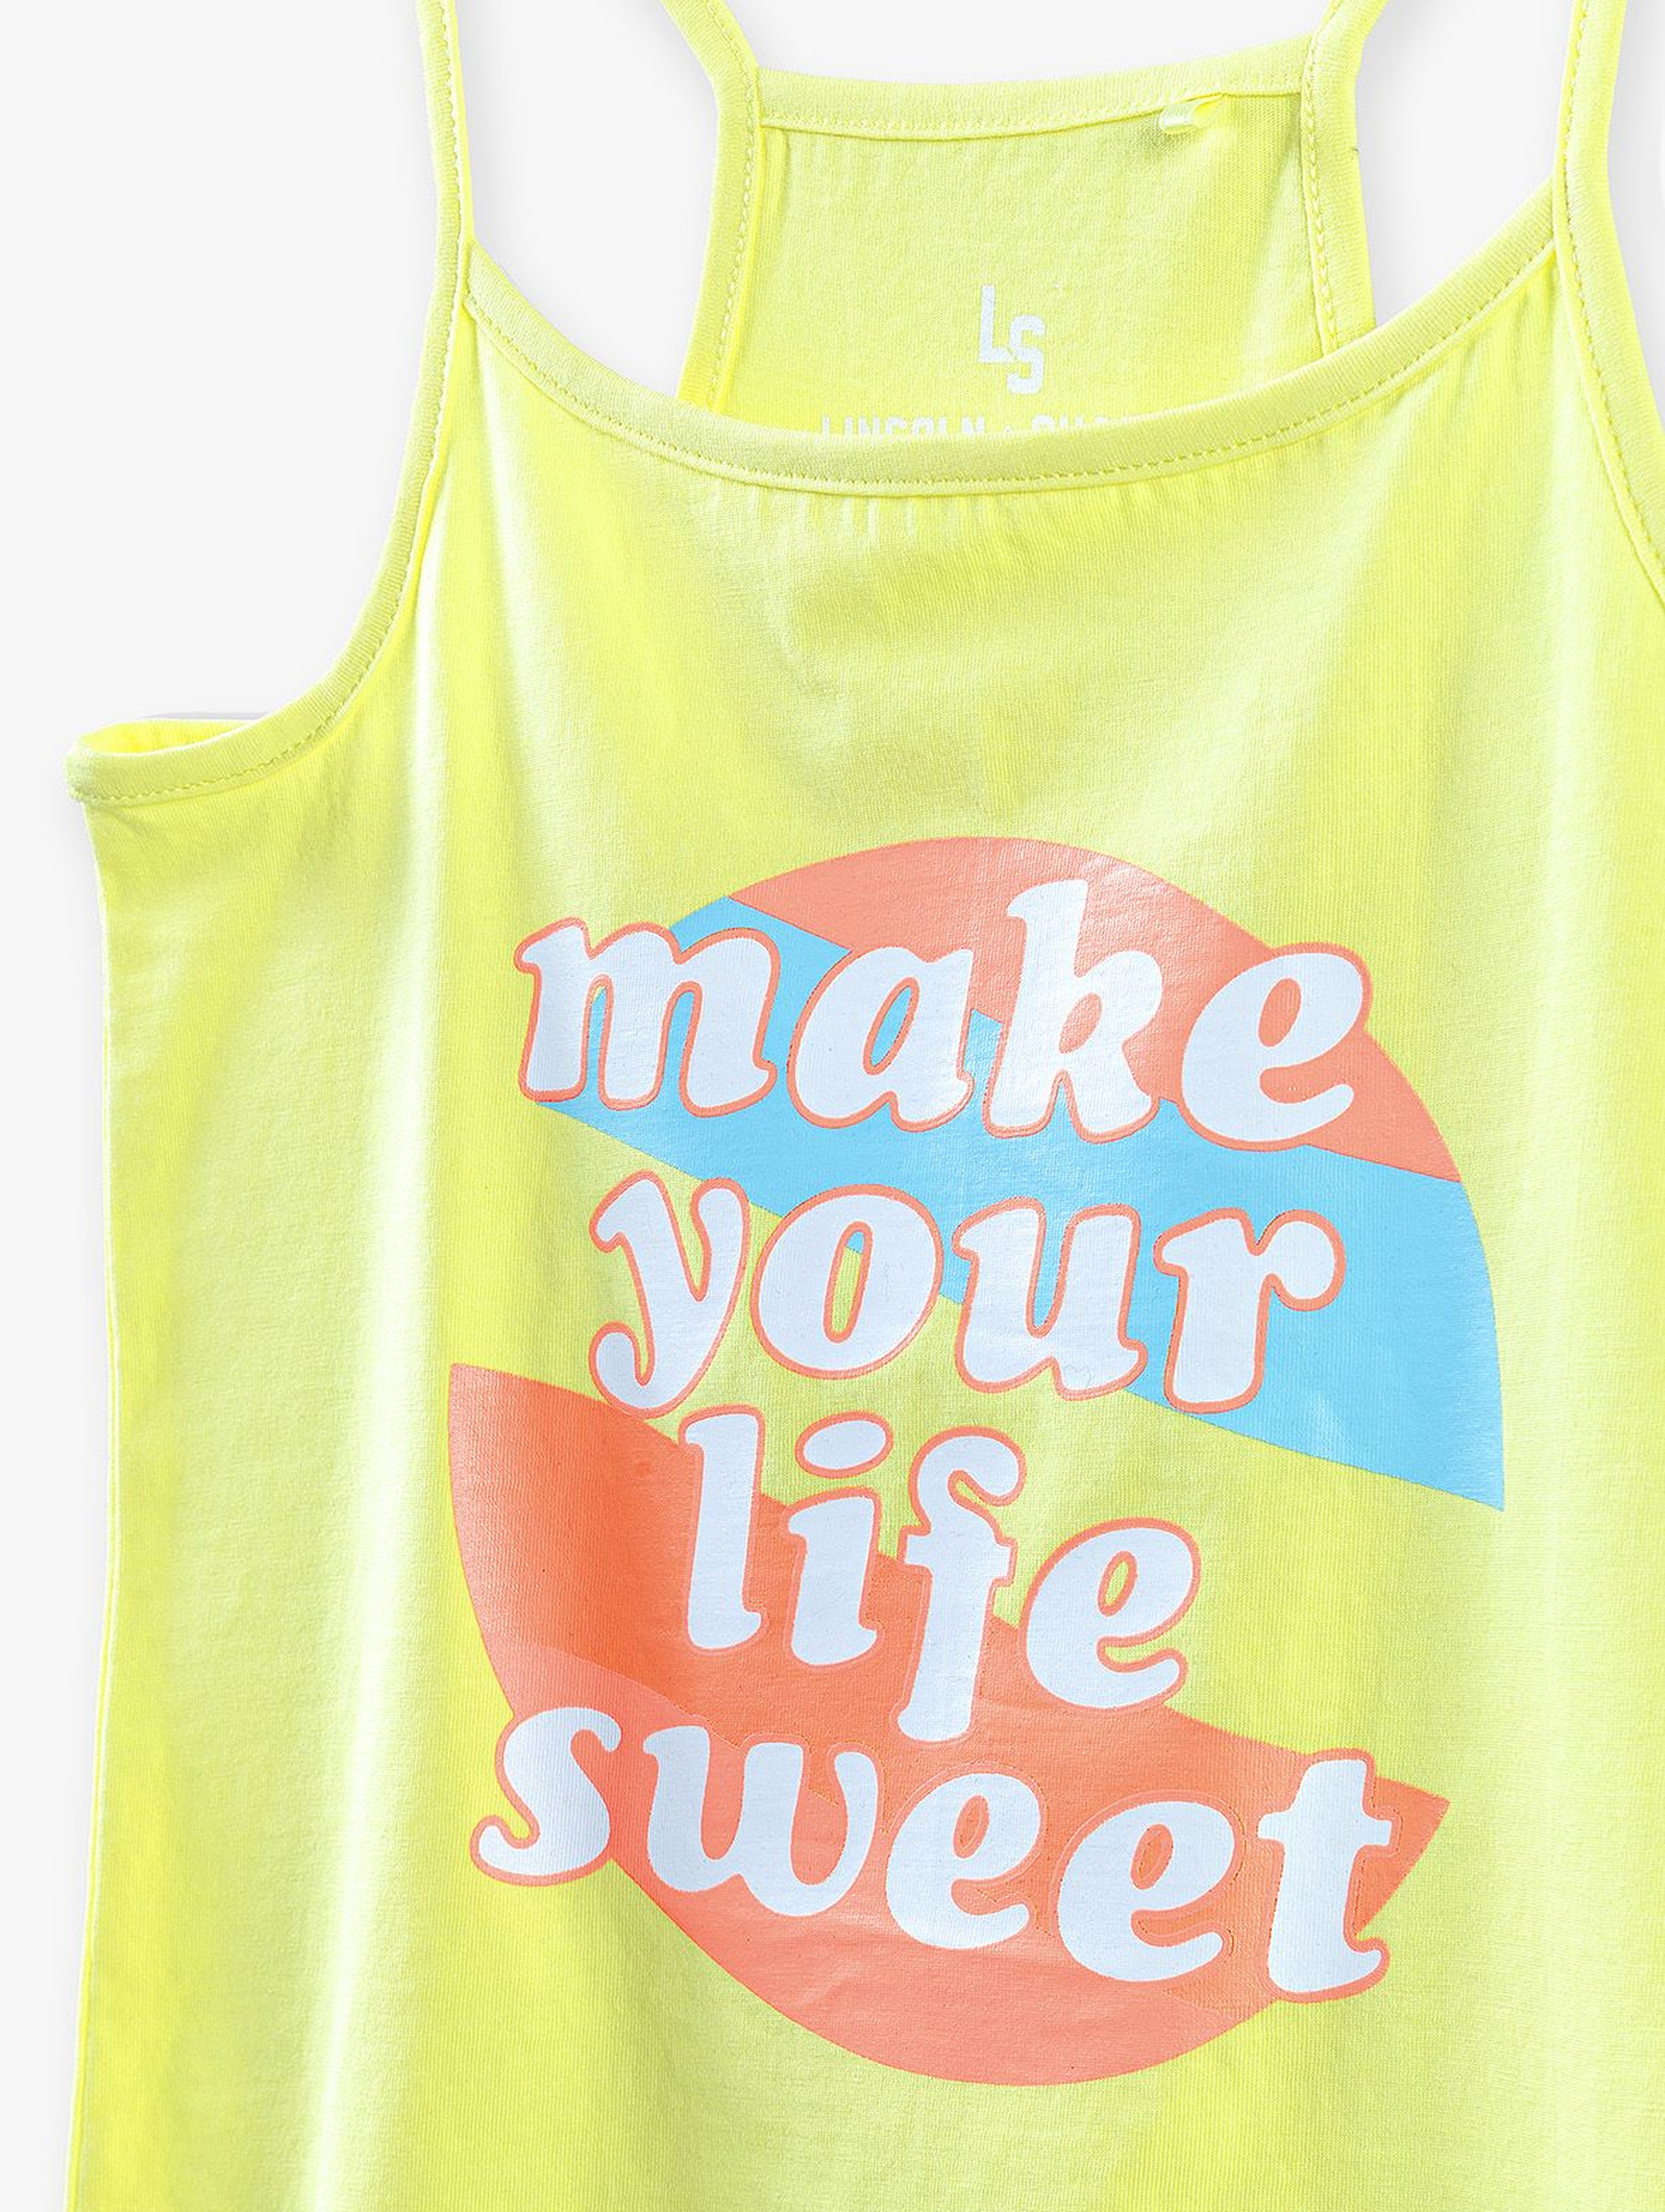 T-shirt dziewczęcy  z napisem Make Your Life Sweet - żółty